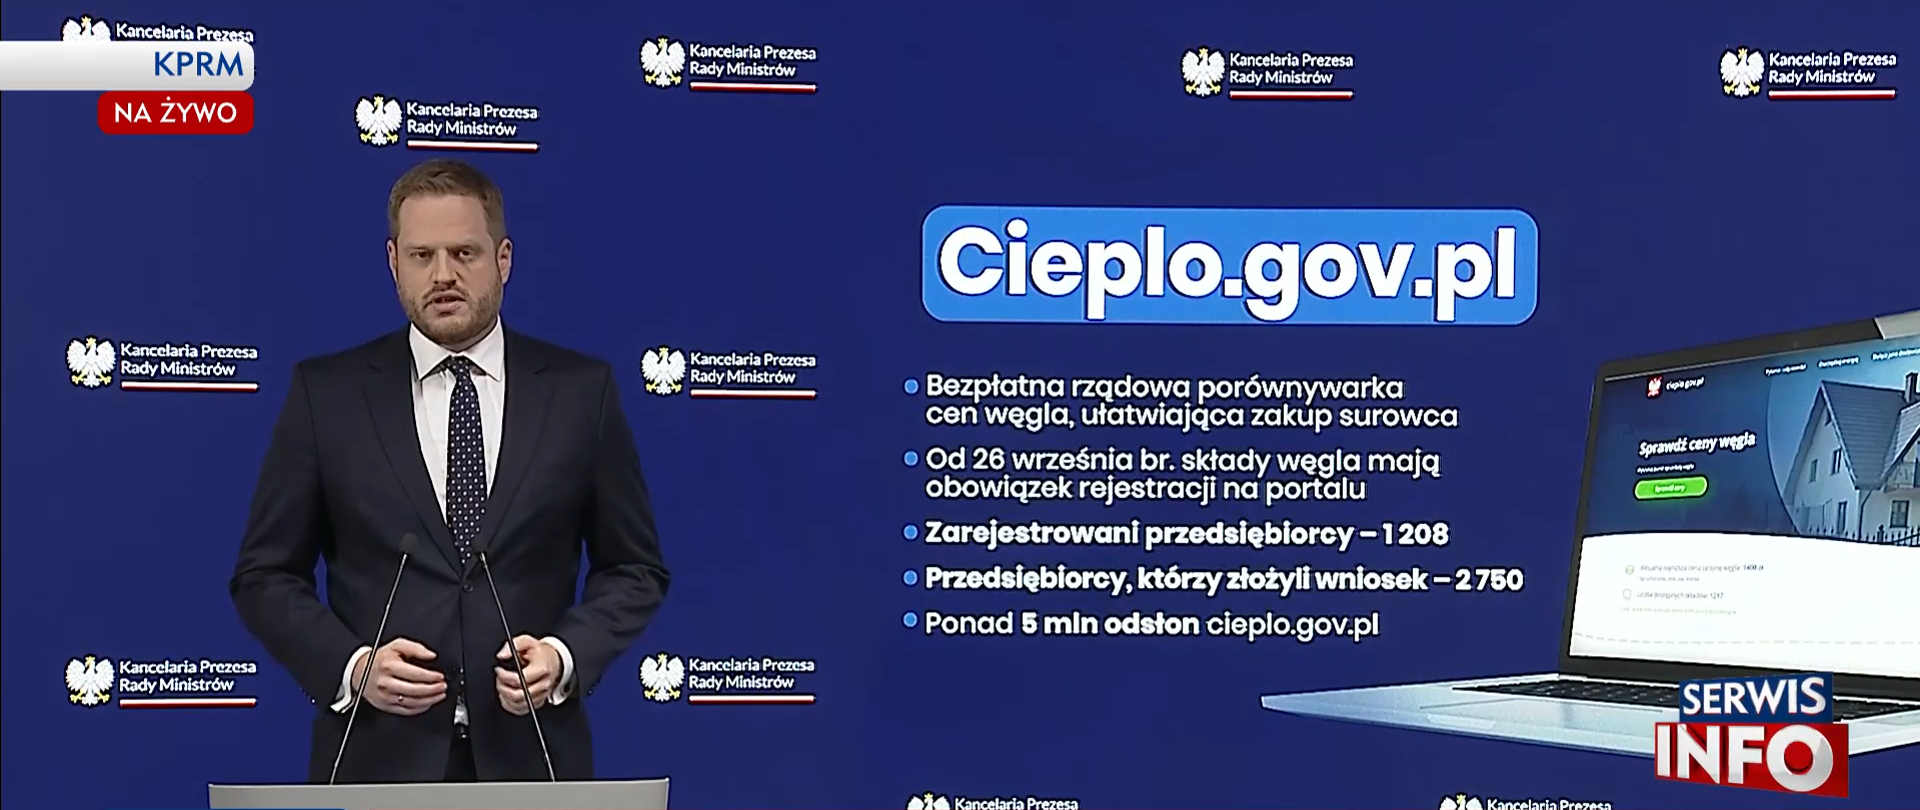 Przypominamy o ustawowym obowiązku rejestracji przedsiębiorców na portalu Cieplo.gov.pl